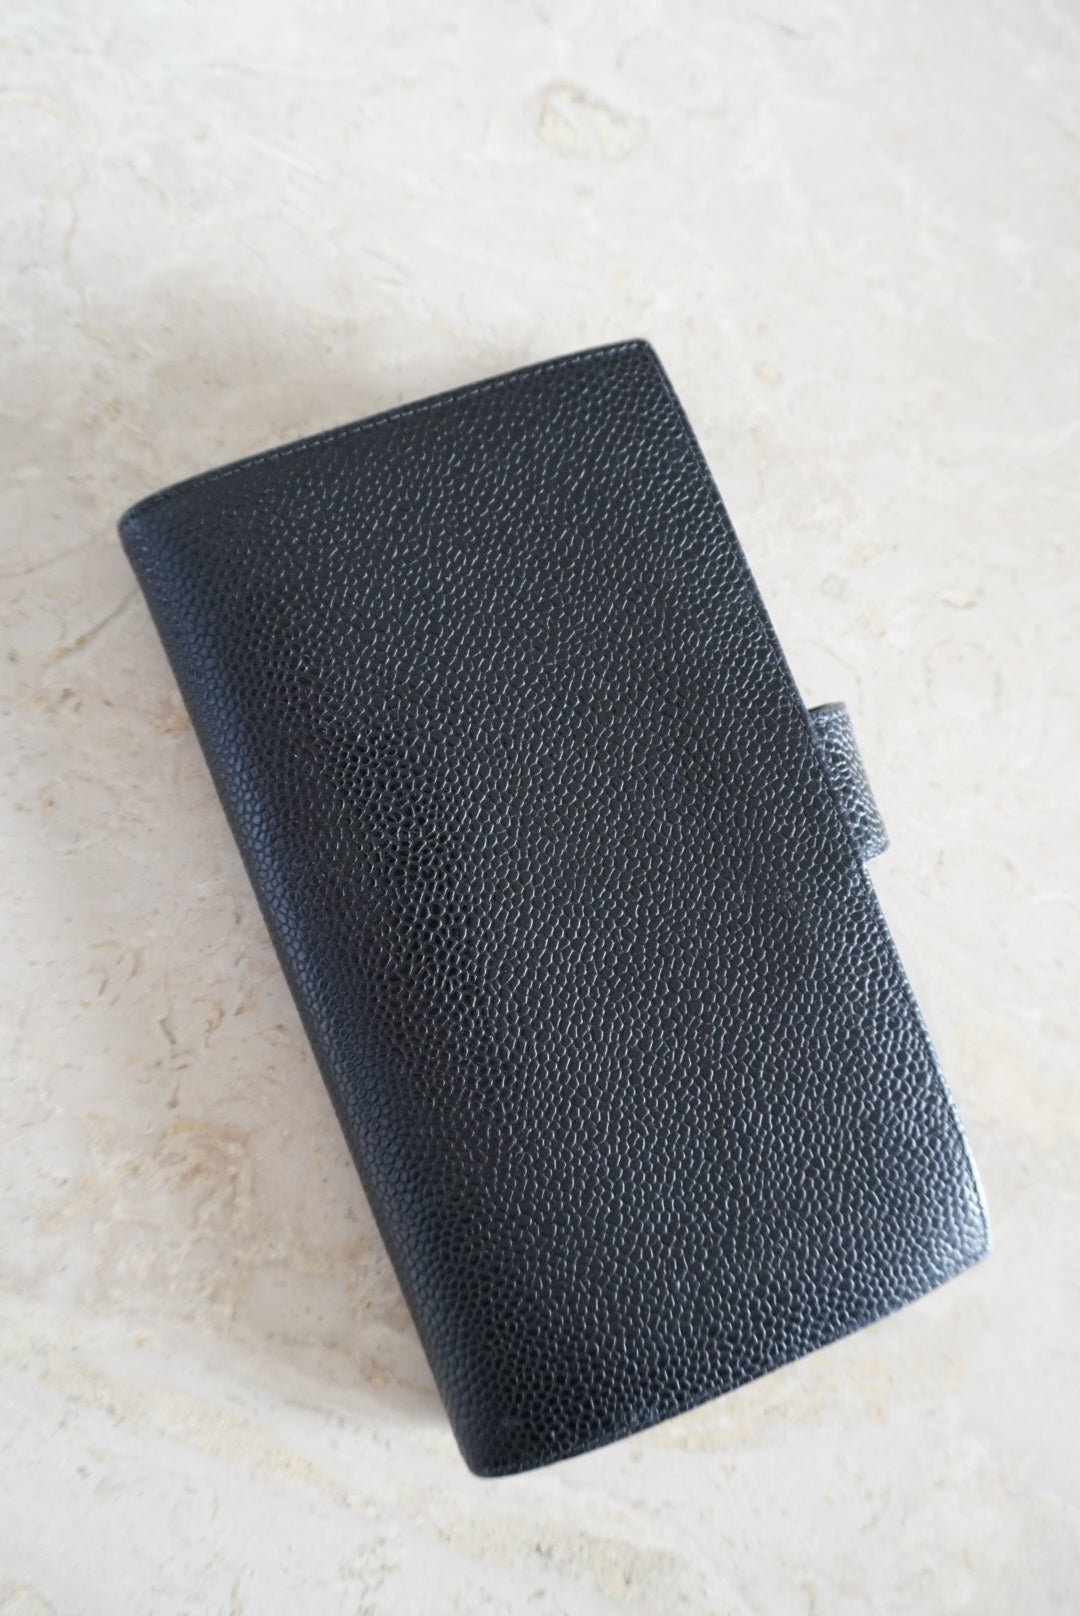 Chanel Bi-Fold Wallet